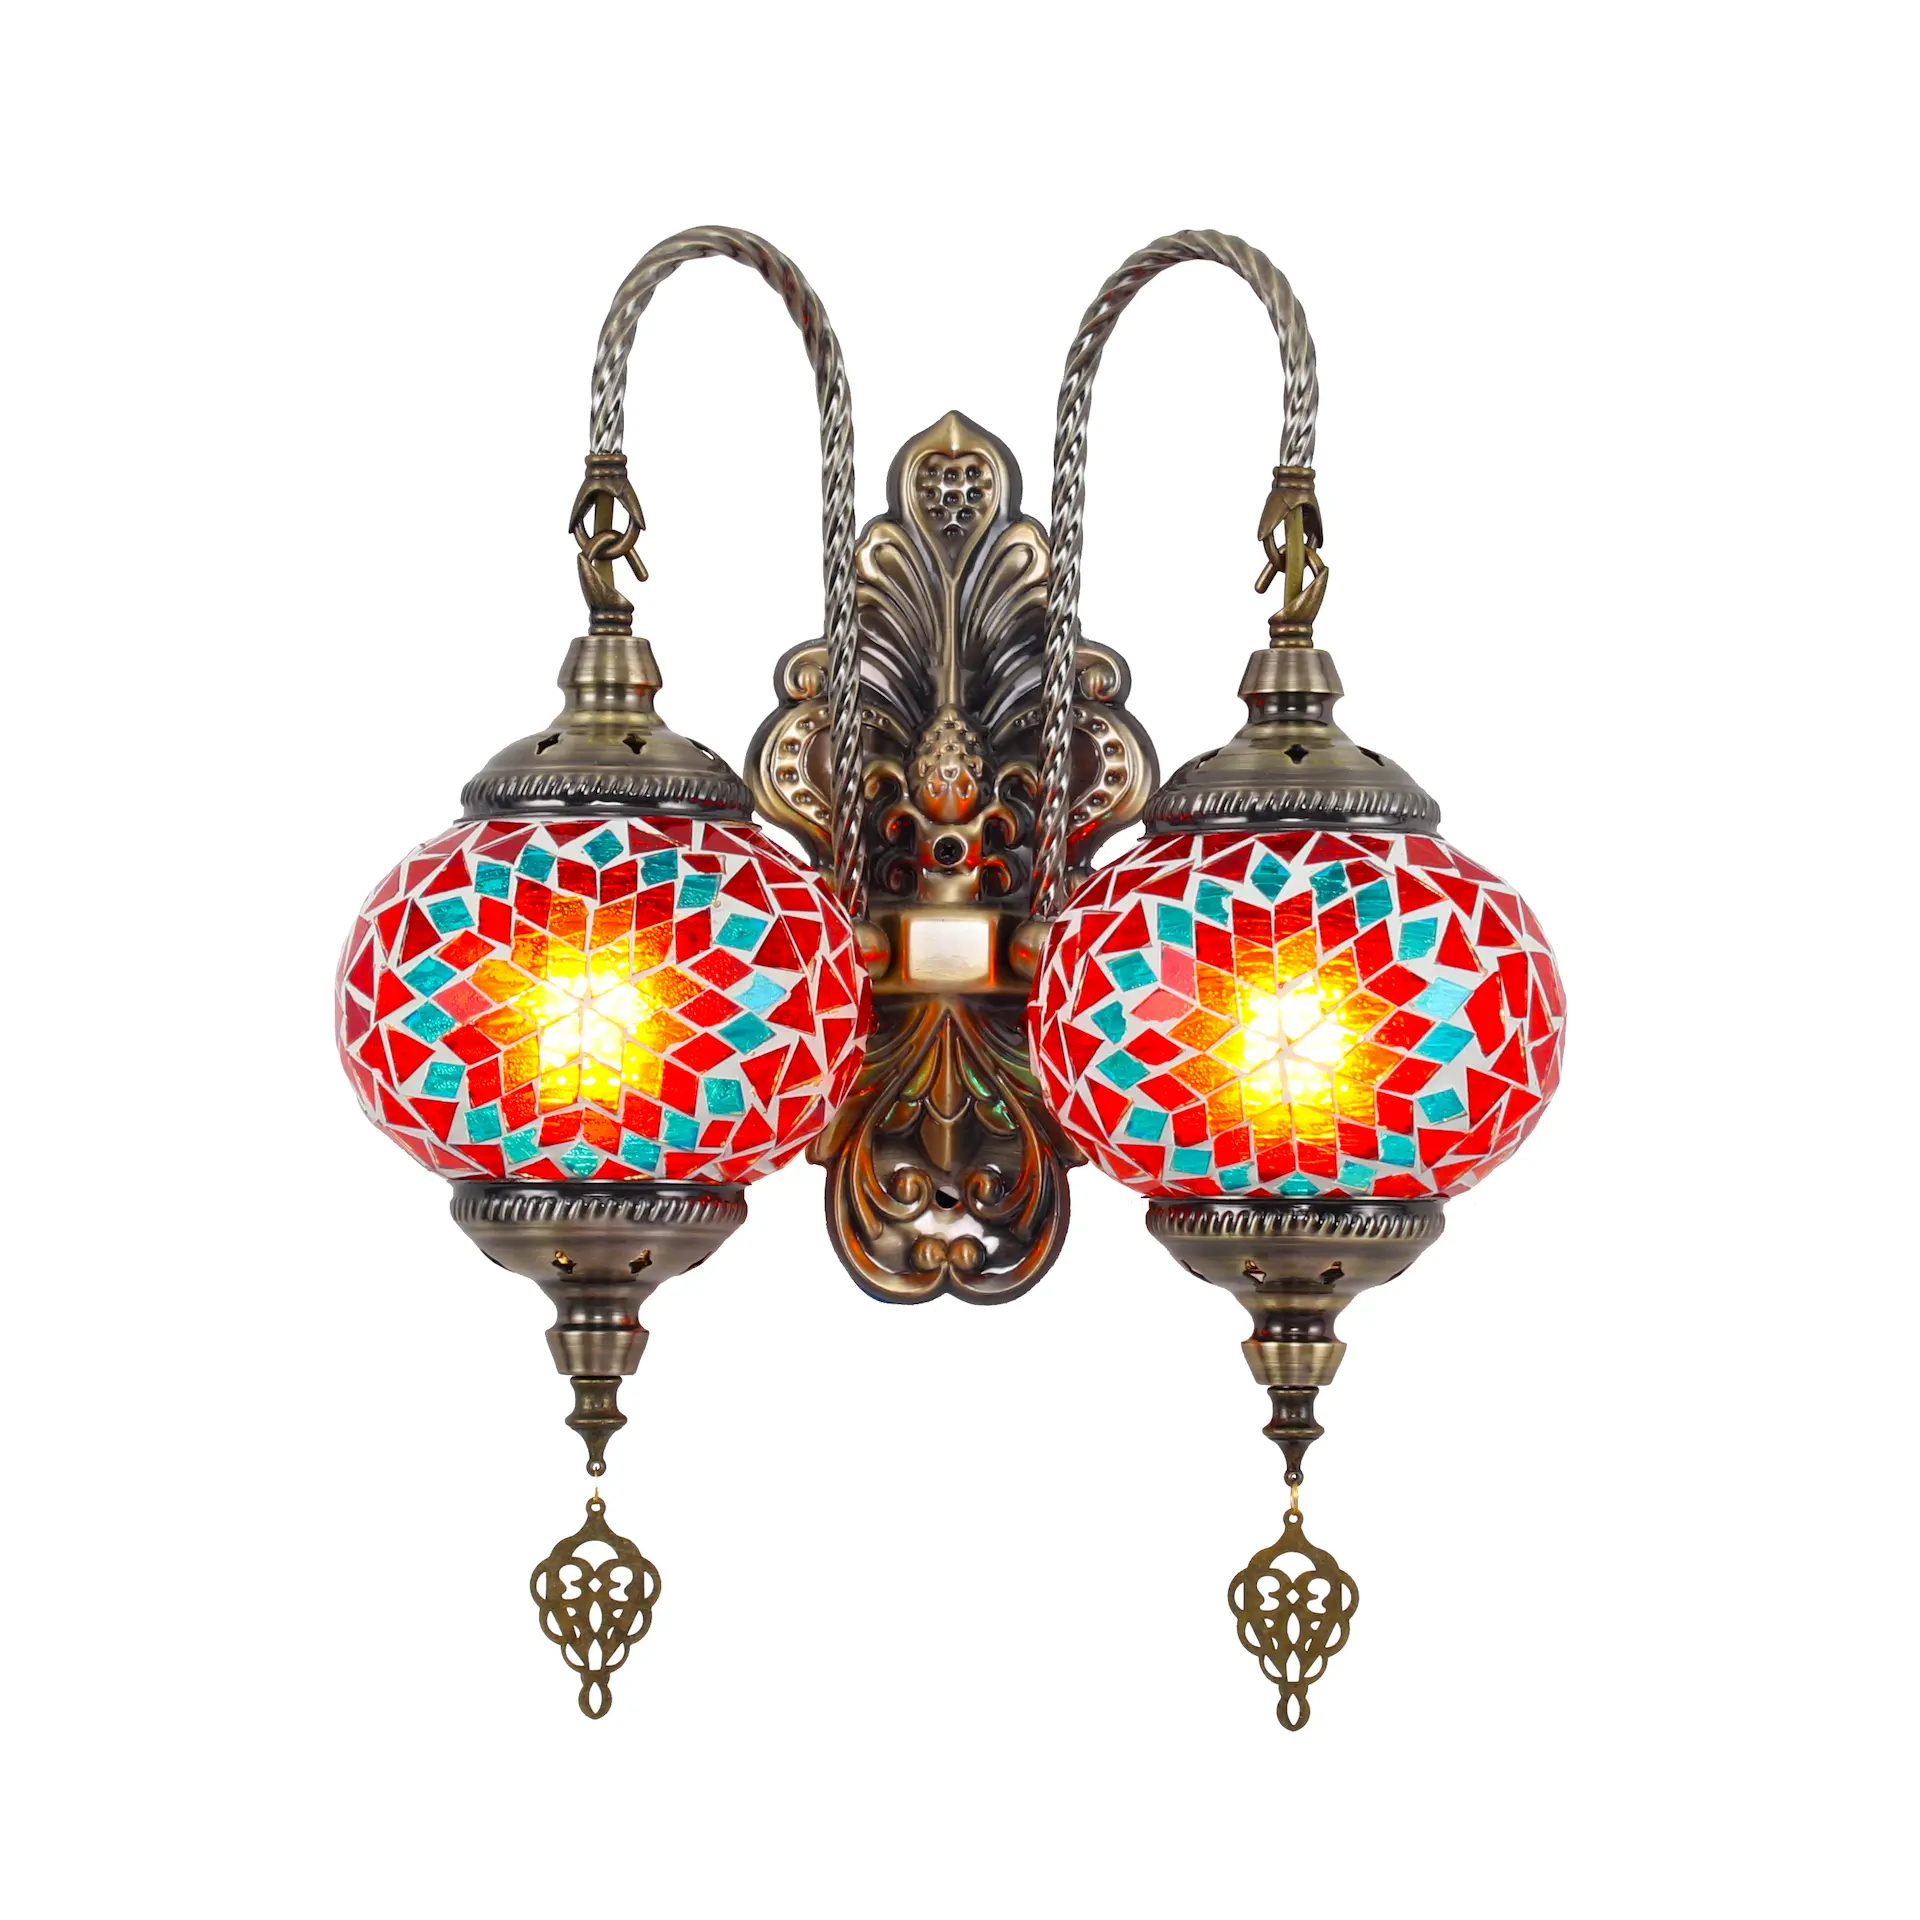 Syadi iluminación estilo turco estilo bohemio hecho a mano mosaico vidrieras hogar decorar lámpara de pared